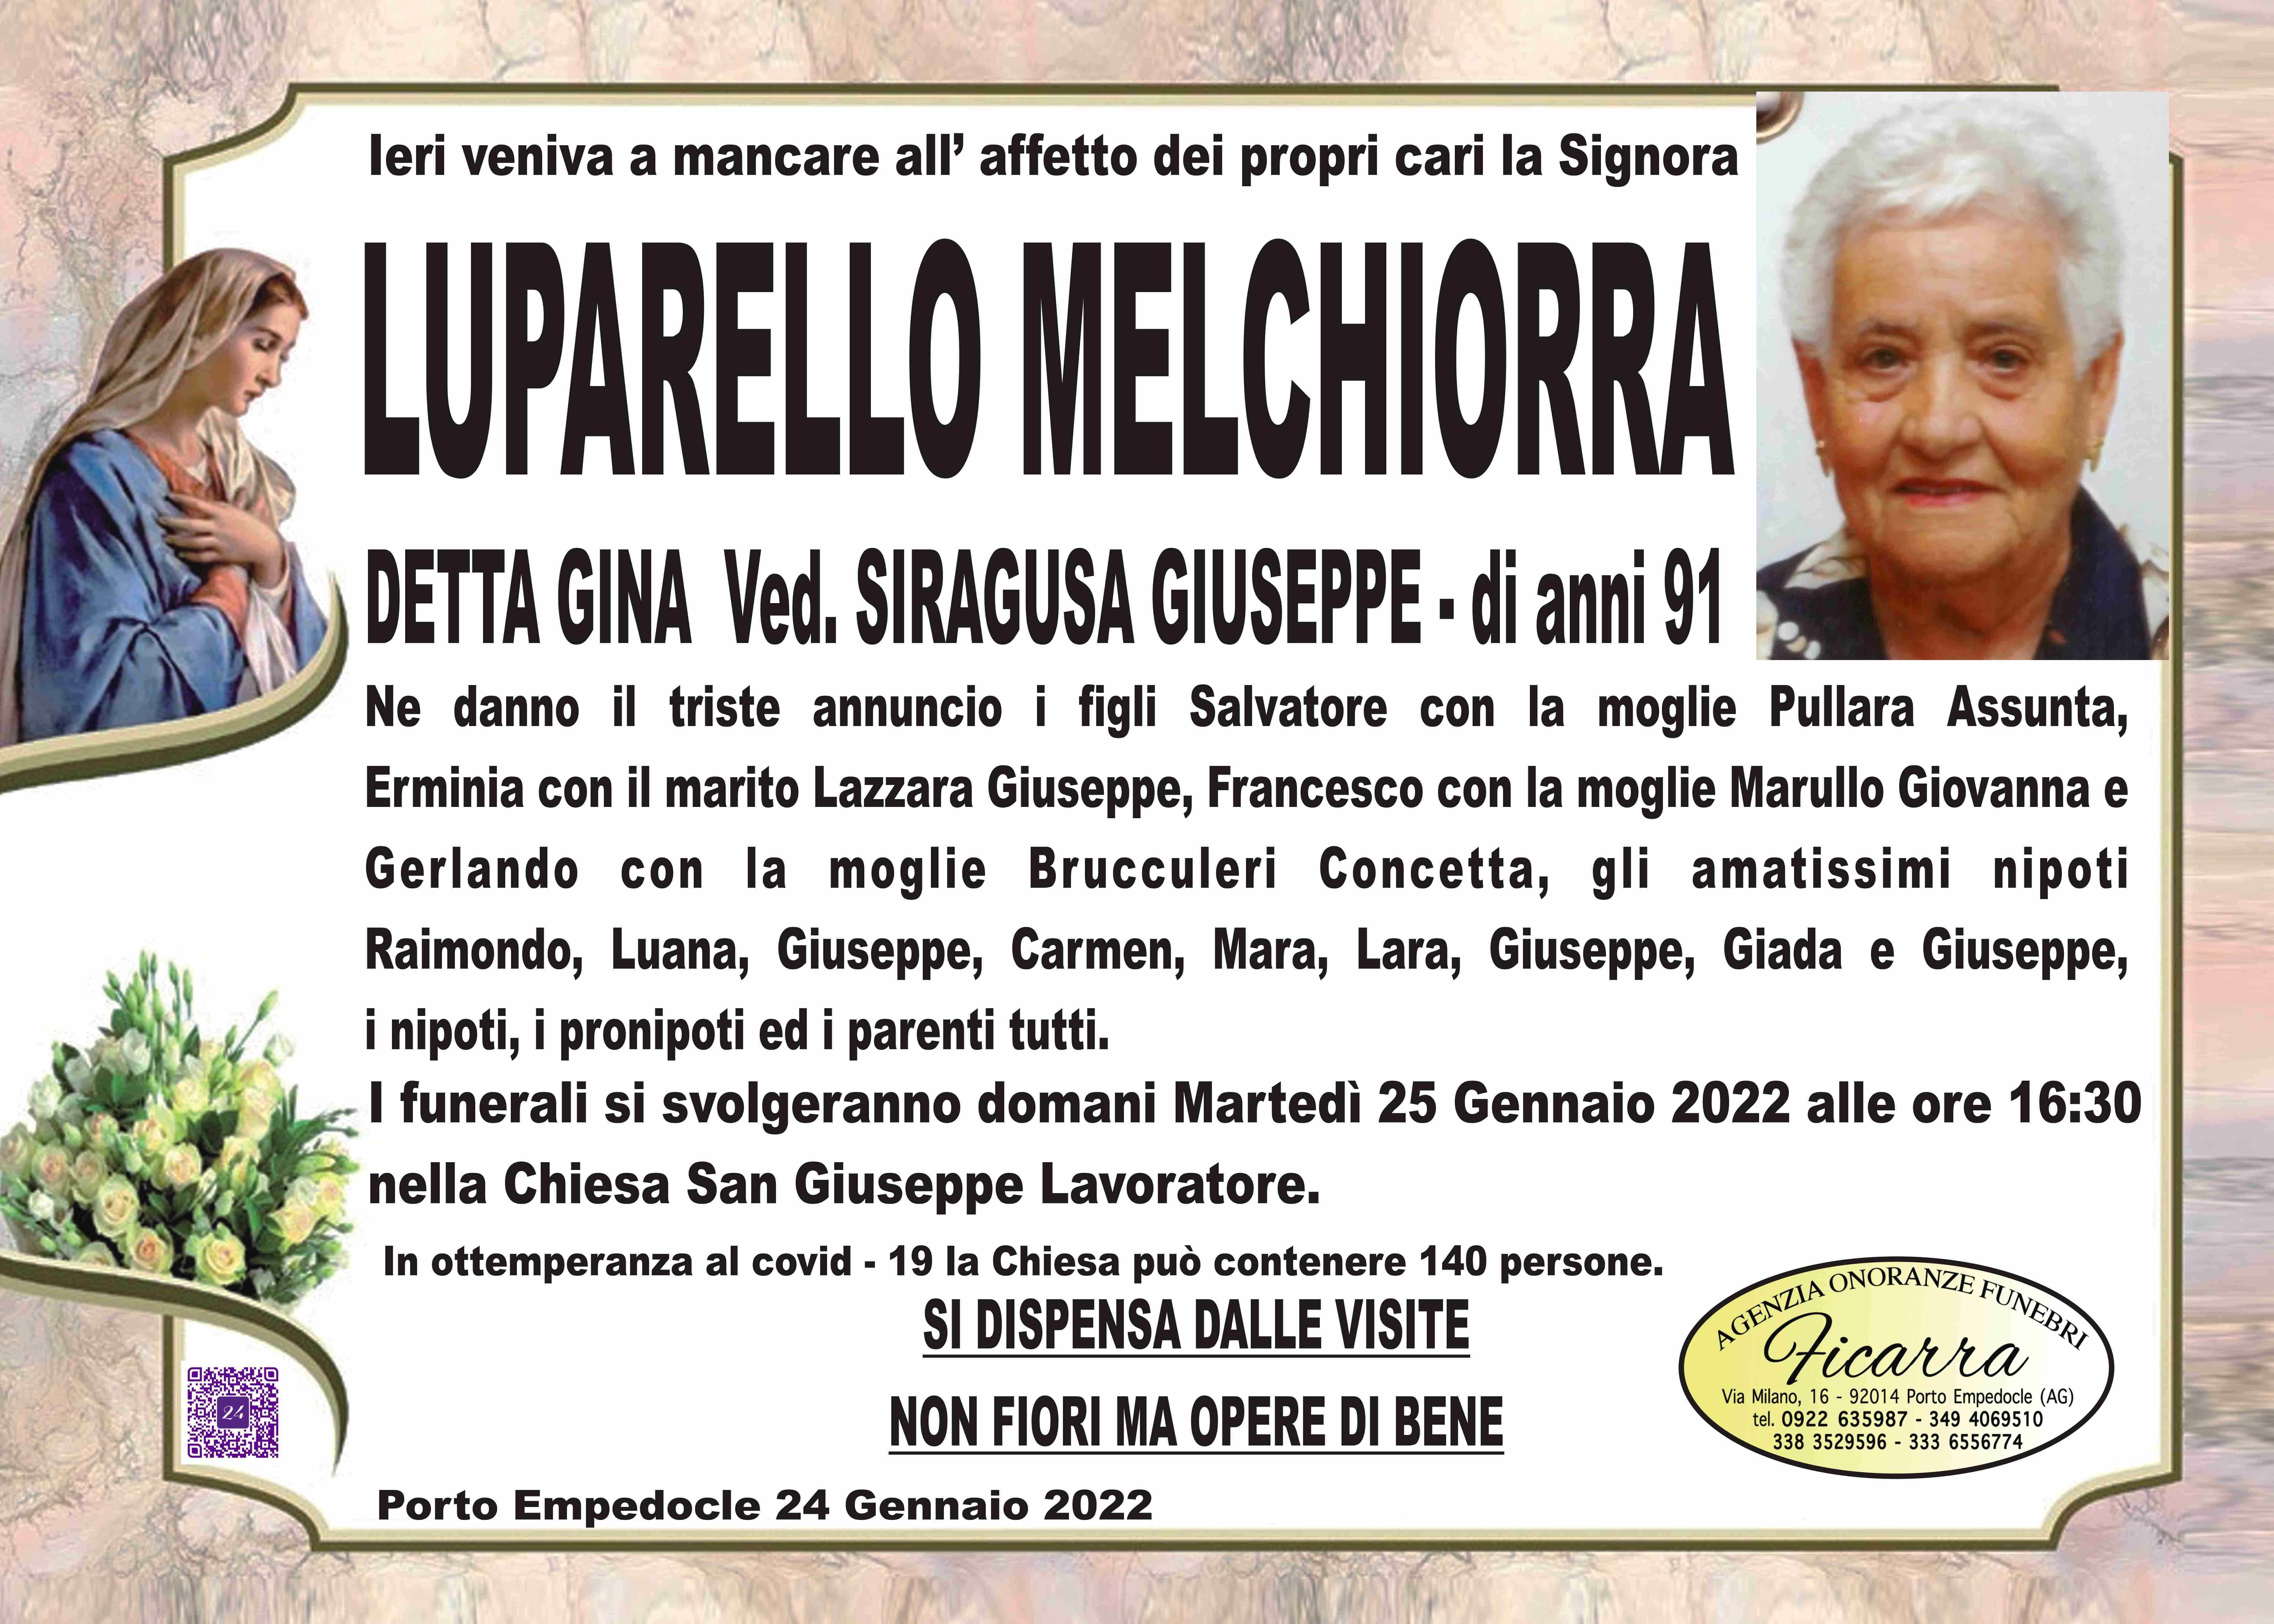 Melchiorra Luparello